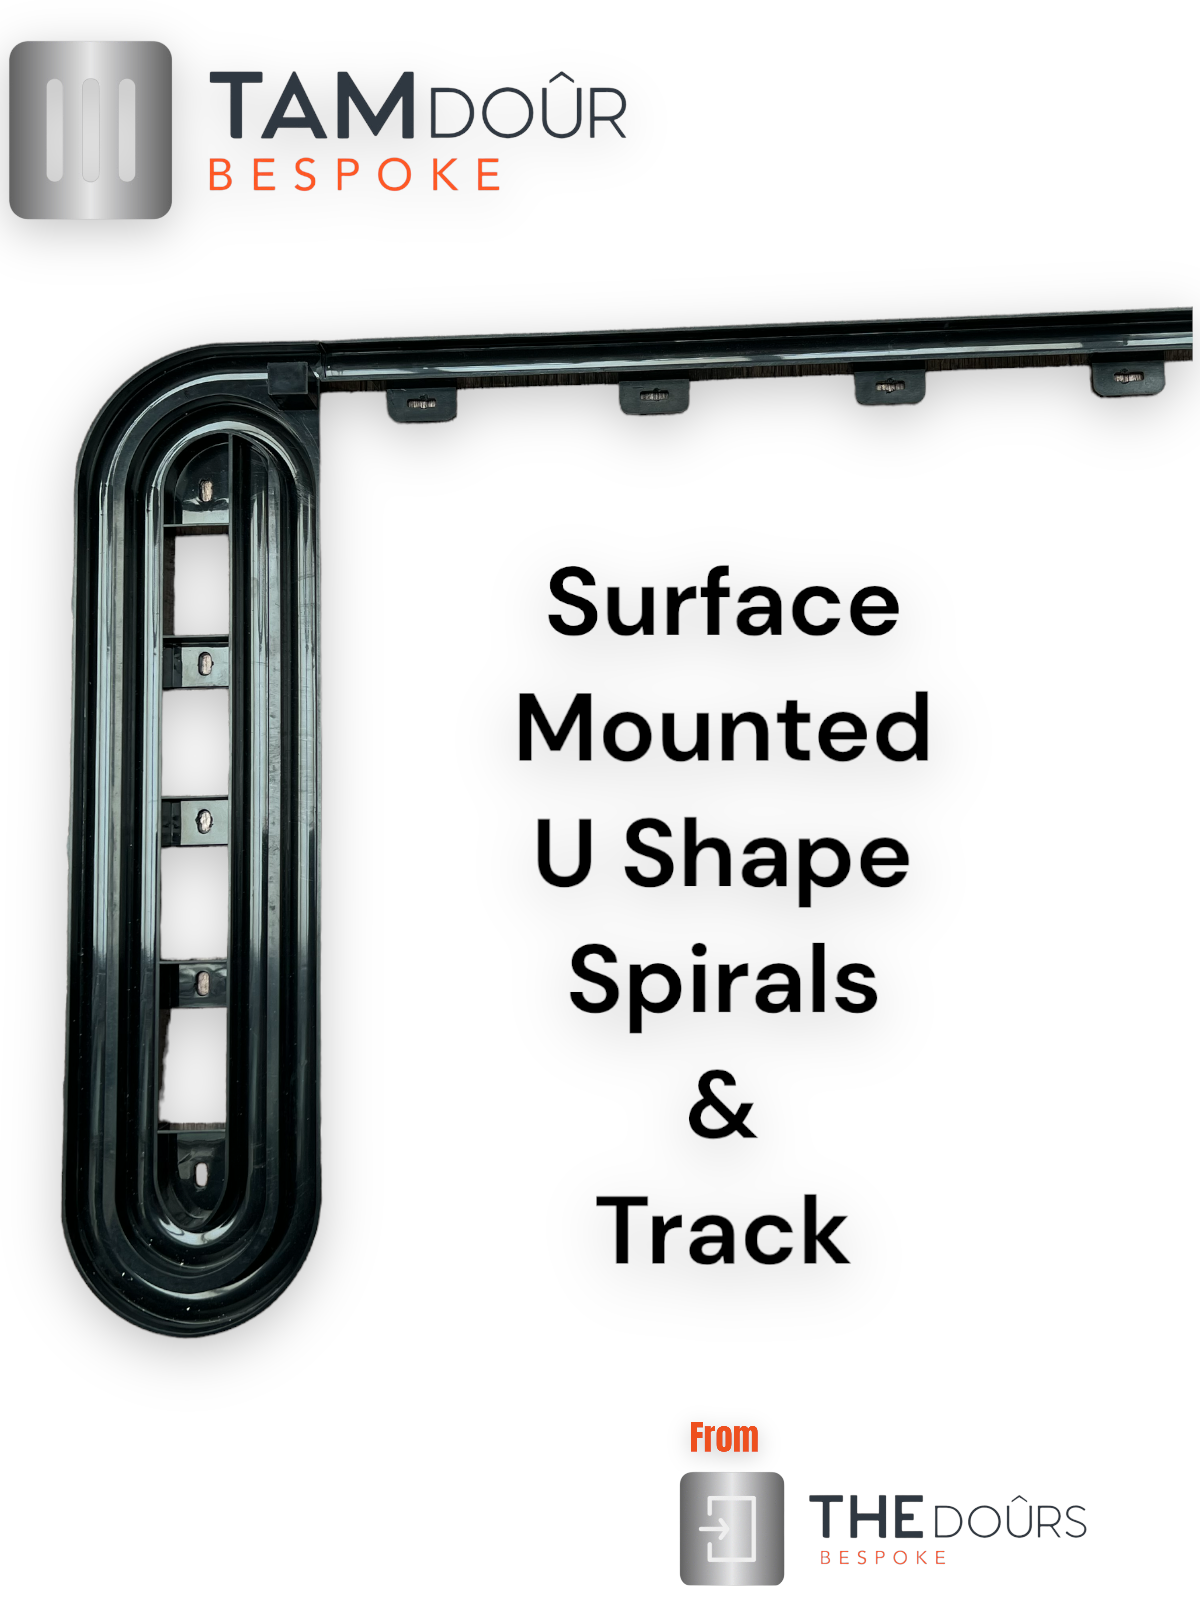 Kit de puerta corrediza vertical tipo persiana plateada: 1000 mm hasta 1600 mm de altura Opciones